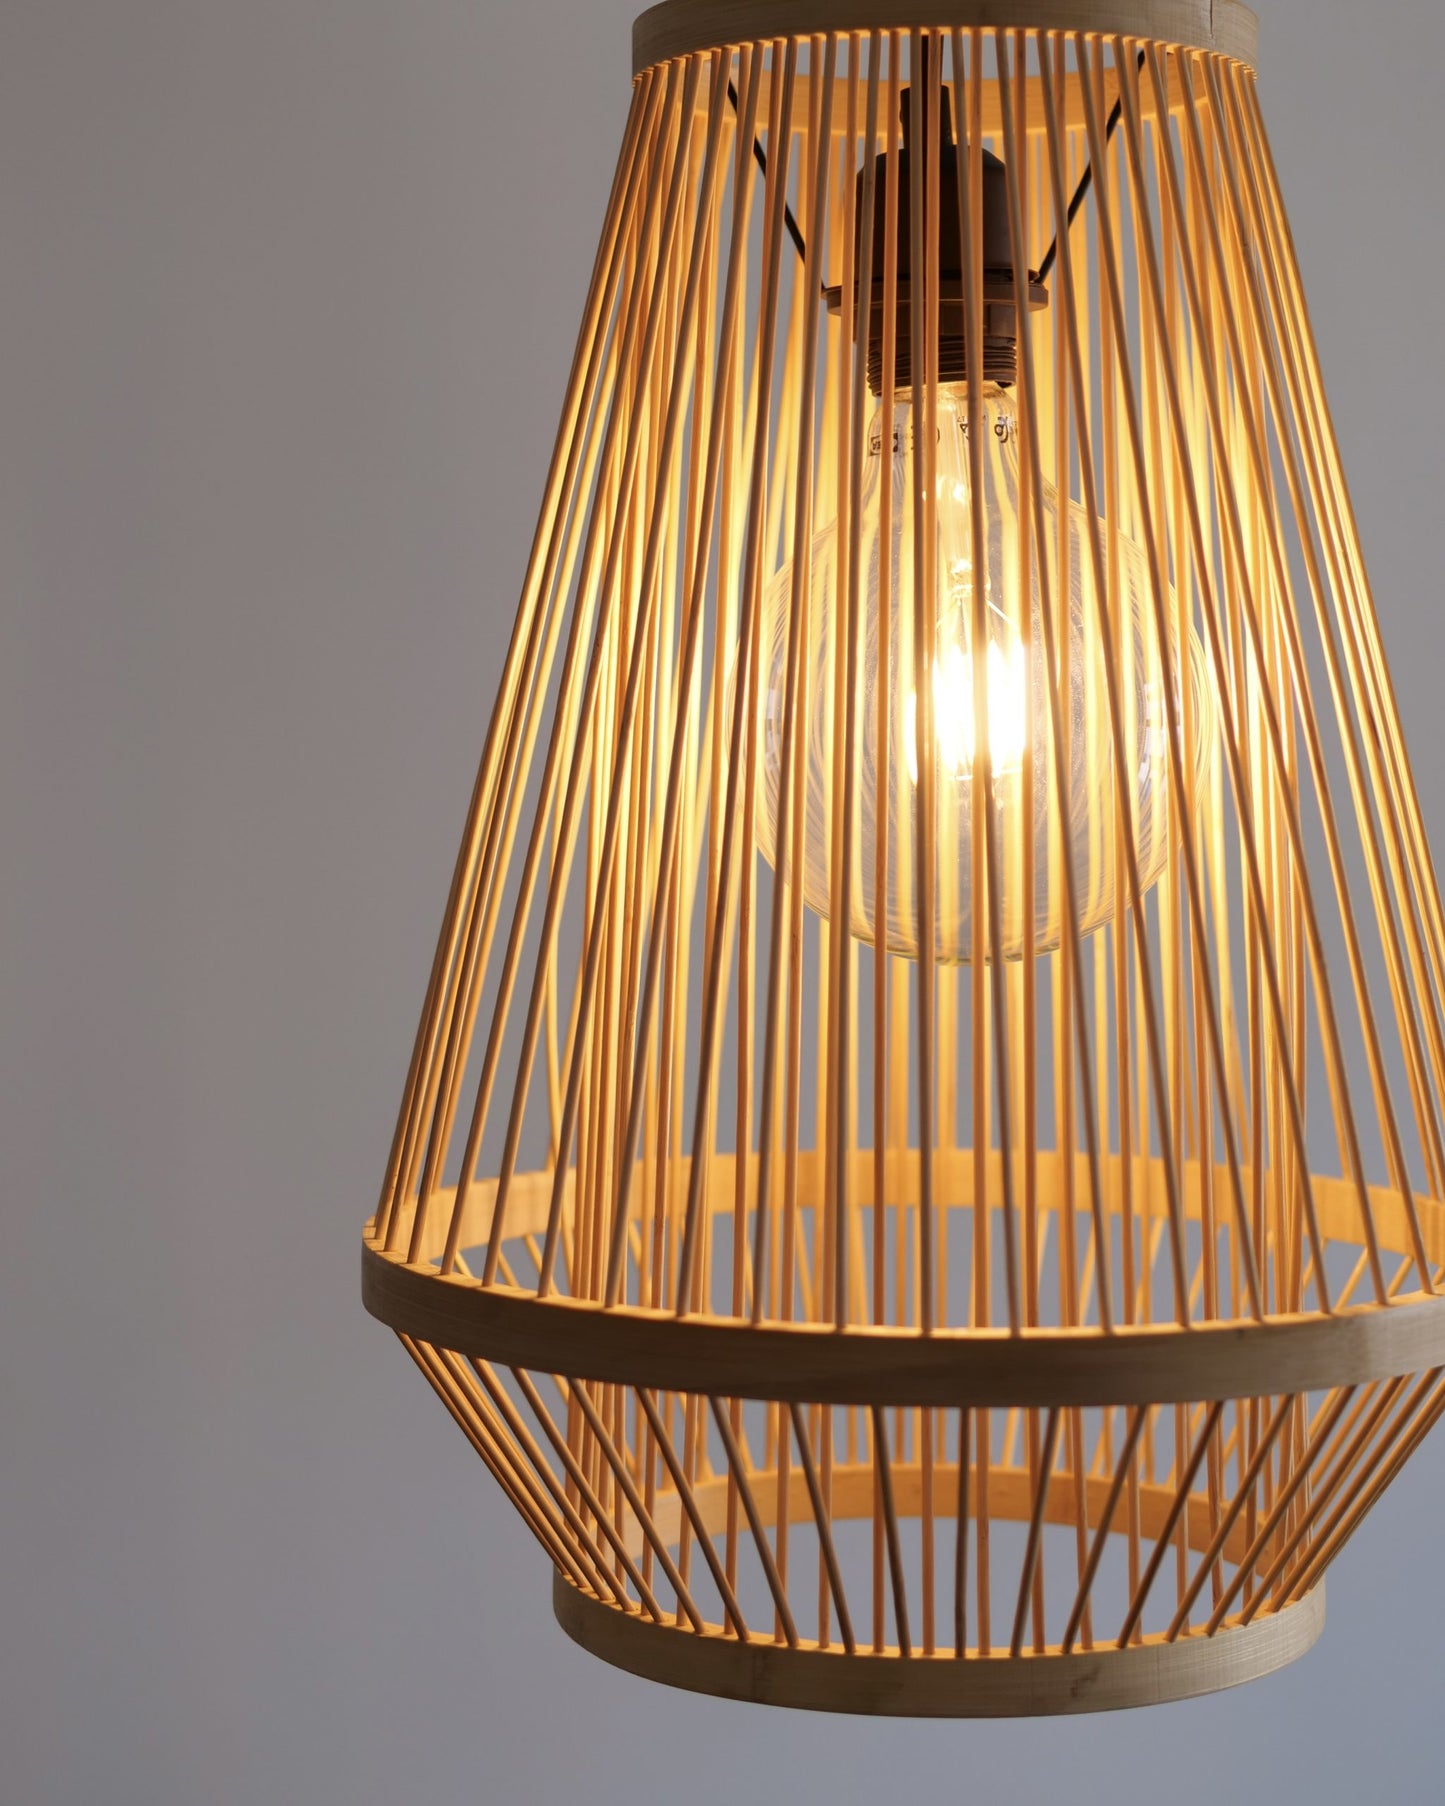 Бамбукова лампа. Продълговата бамбукова лампа за интериор. Направена за оачакване от таван.